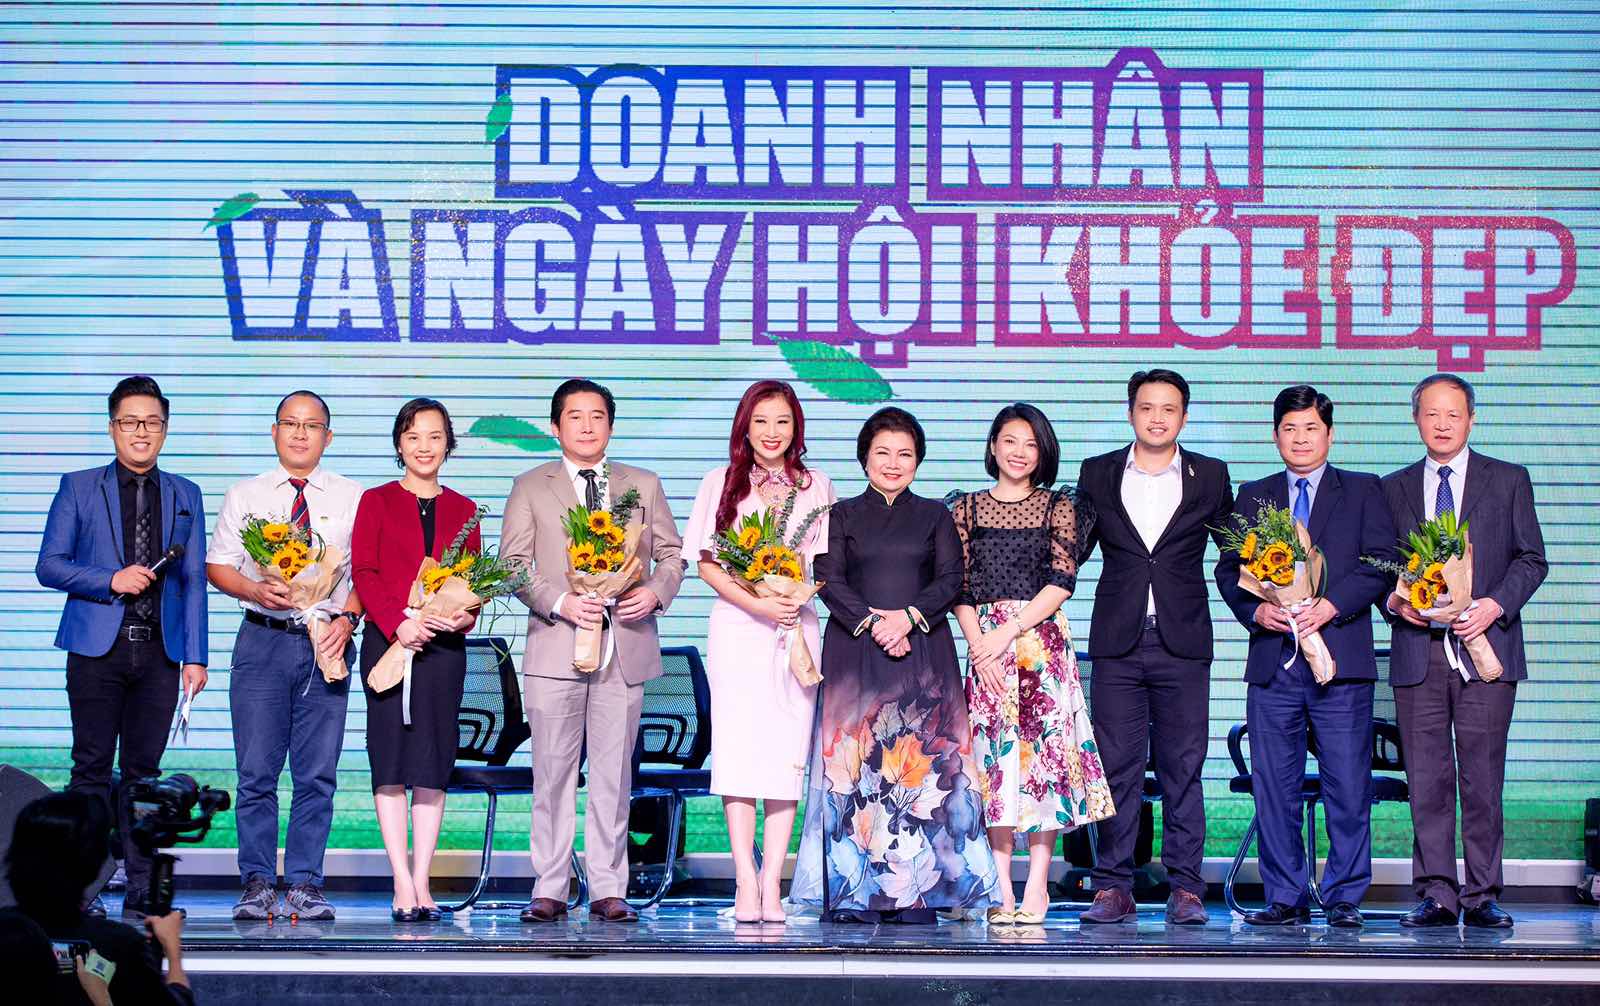 Nam Hương Group – Đơn vị thực hiện sự kiện “Doanh nhân & Ngày hội khỏe đẹp” – Nhà đầu tư cho các Startup trẻ trong nhiều lĩnh vực